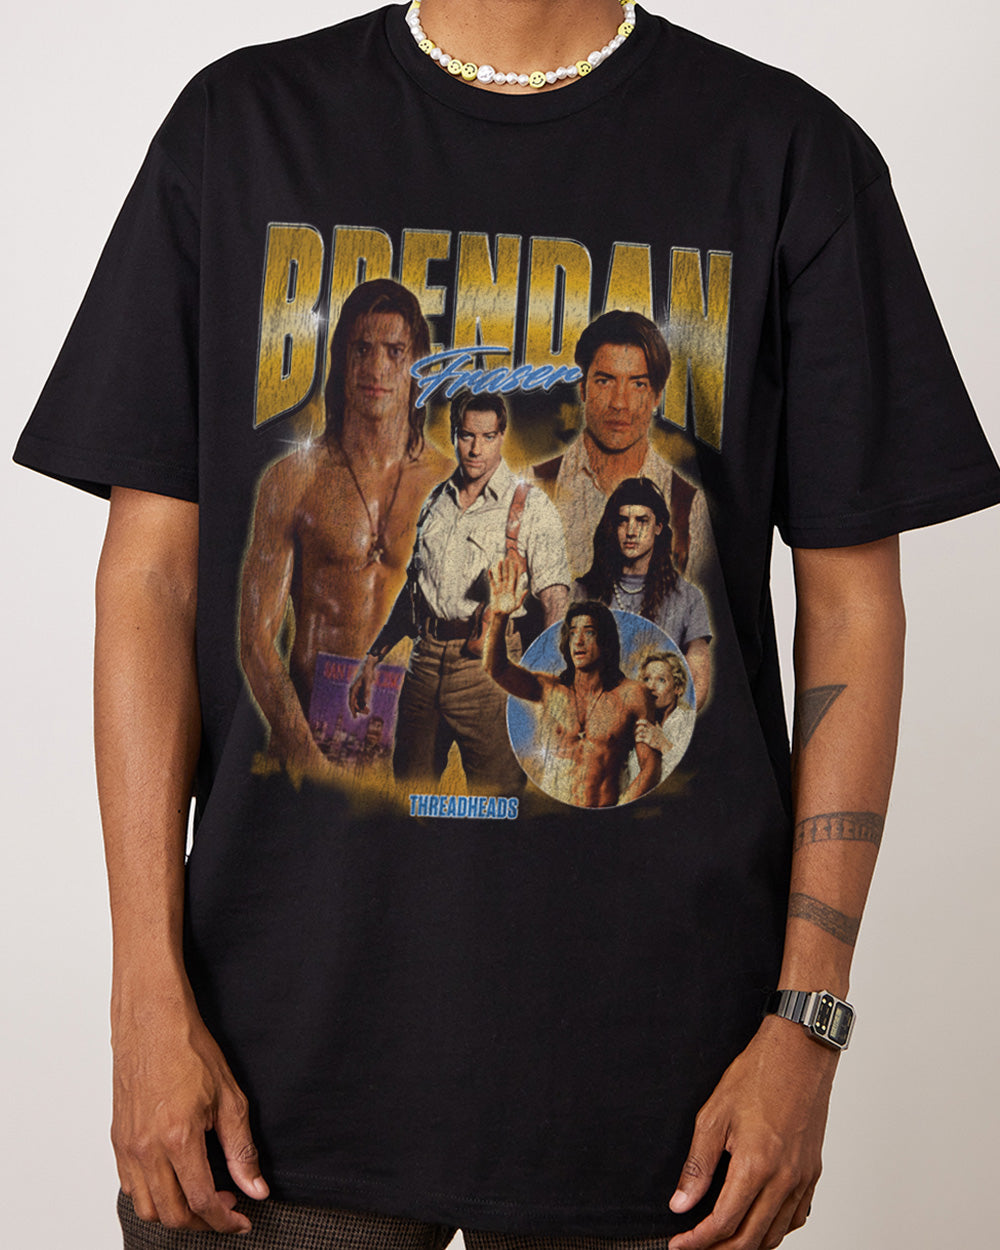 Brendan Fraser T-Shirt Australia Online Black